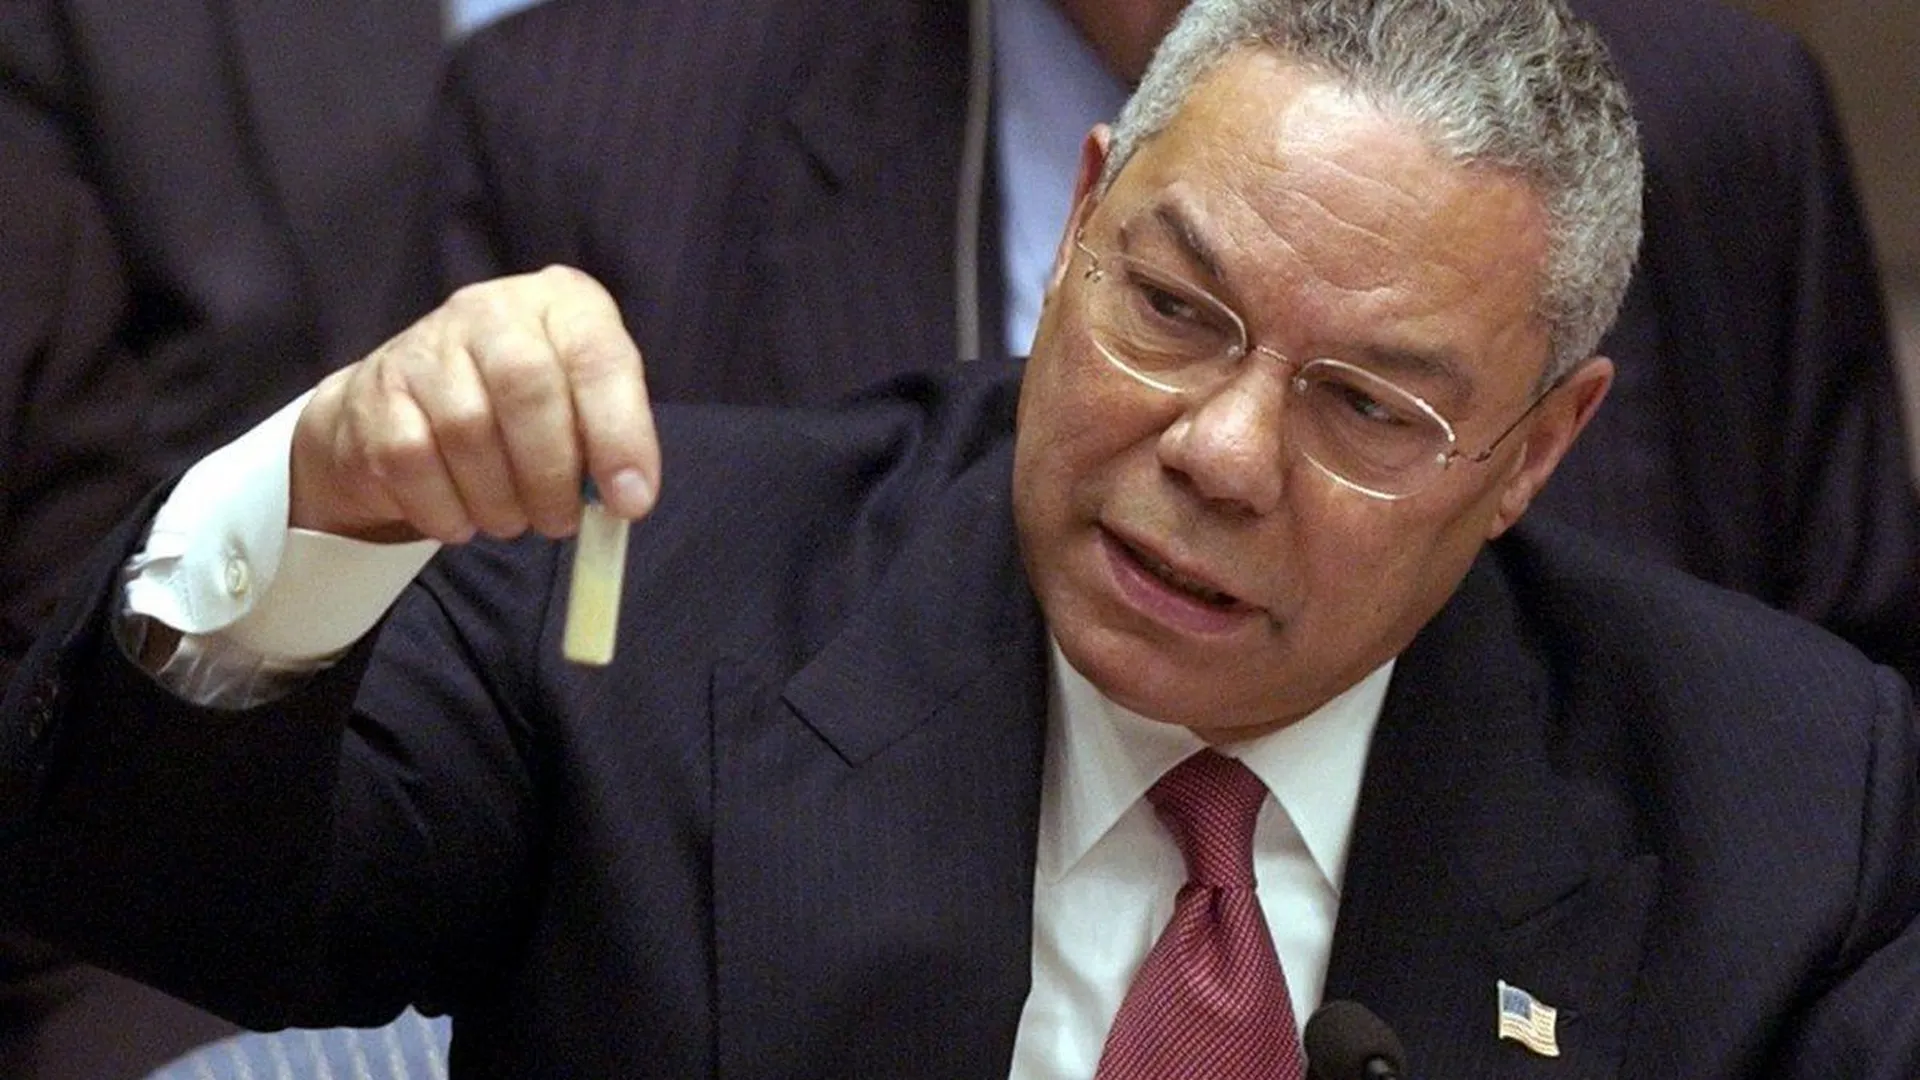 Фото: United States Government. Госсекретарь Колин Пауэлл на заседании Совбеза ООН показывает пробирку, в которой якобы находятся образцы иракского оружия массового поражения, 5 февраля 2003 года